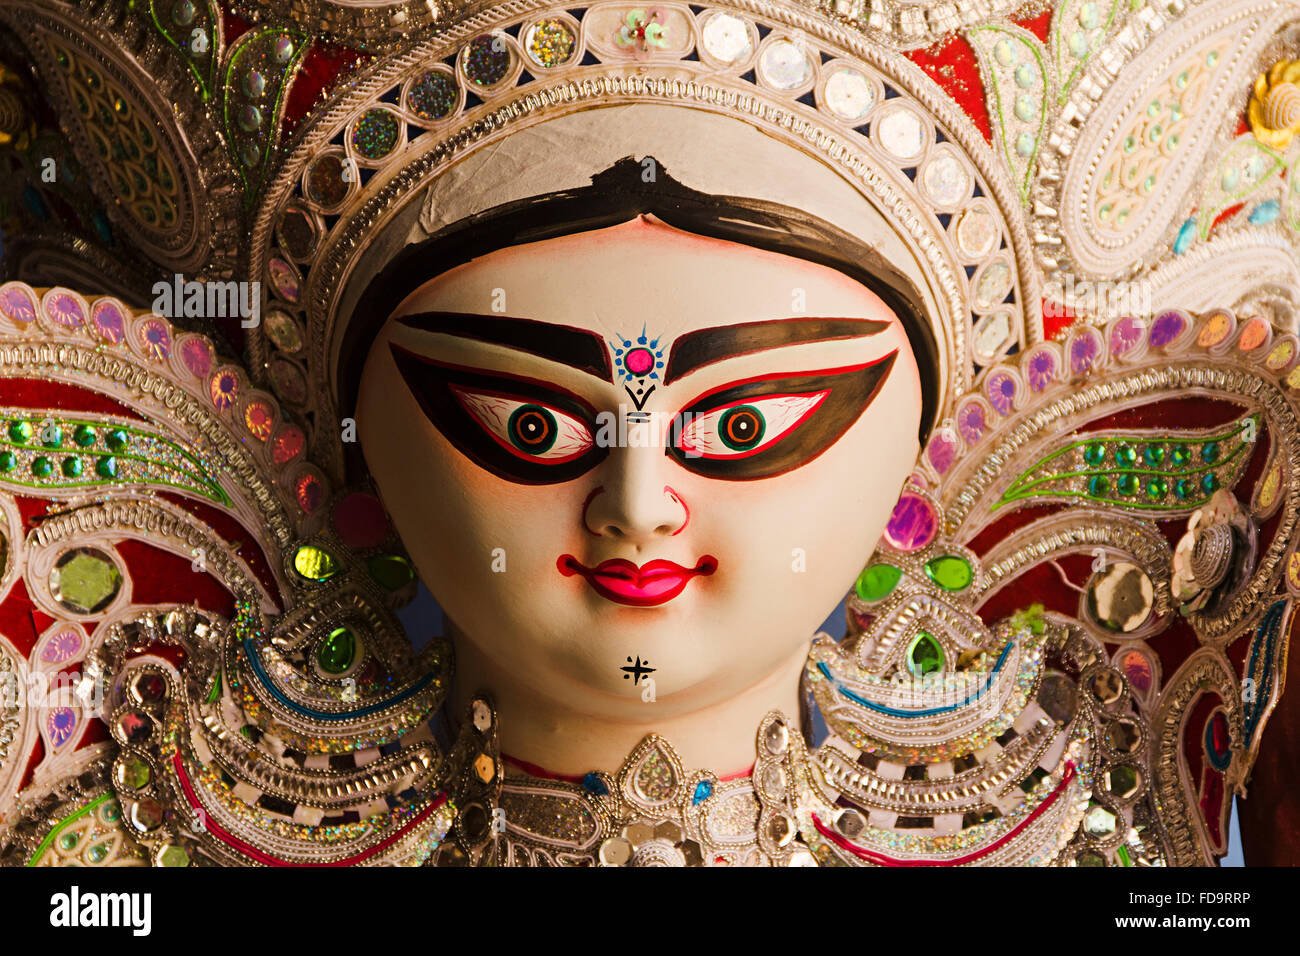 Pin by Shreya Narayan on Shakti | Durga maa, Durga, Durga puja kolkata